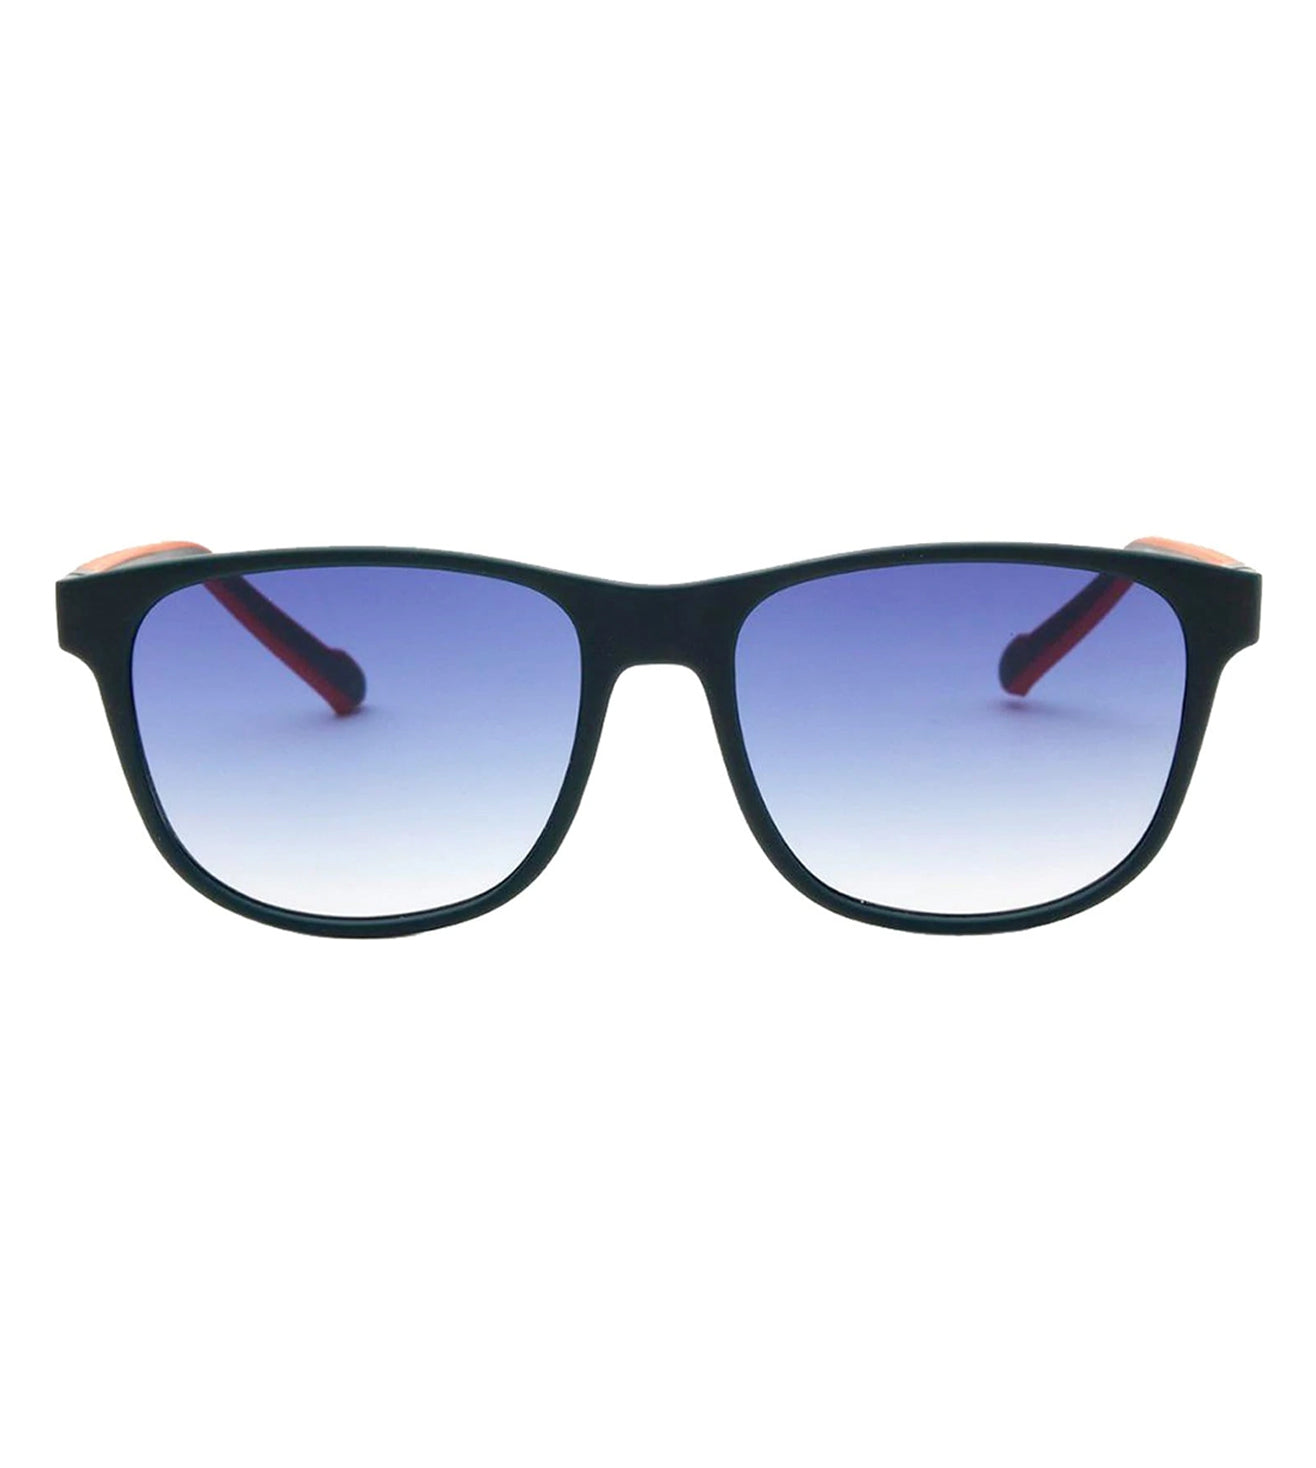 Adidas Originals Blue Square Unisex Sunglasses